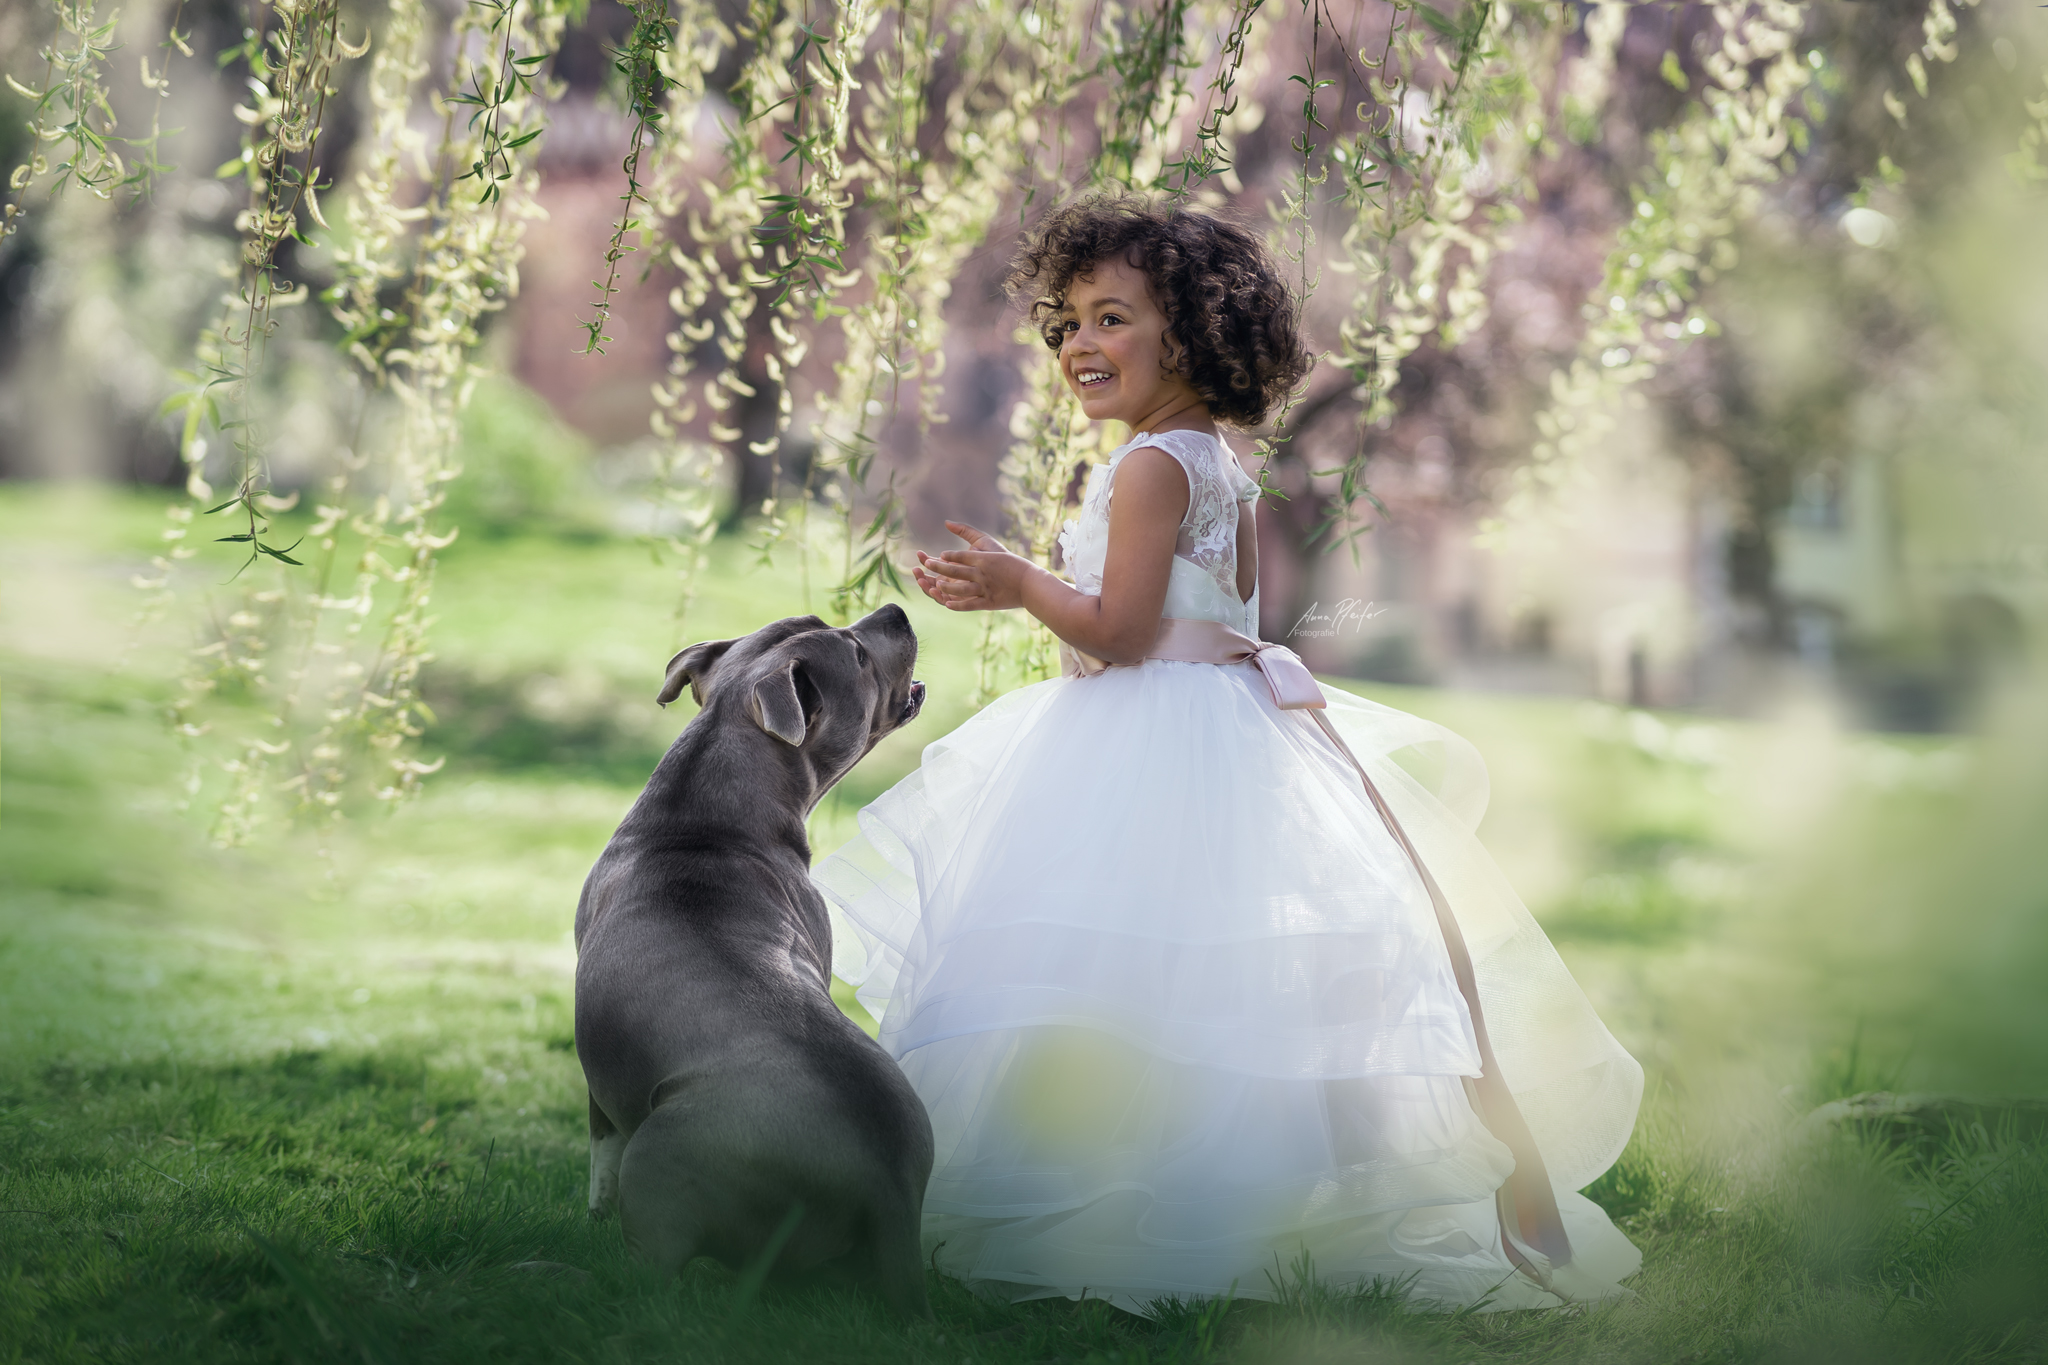 kleines Mädchen neben ihrem Hund auf grüner Wiese unter Trauerweide mit herabhängenden Zweigen